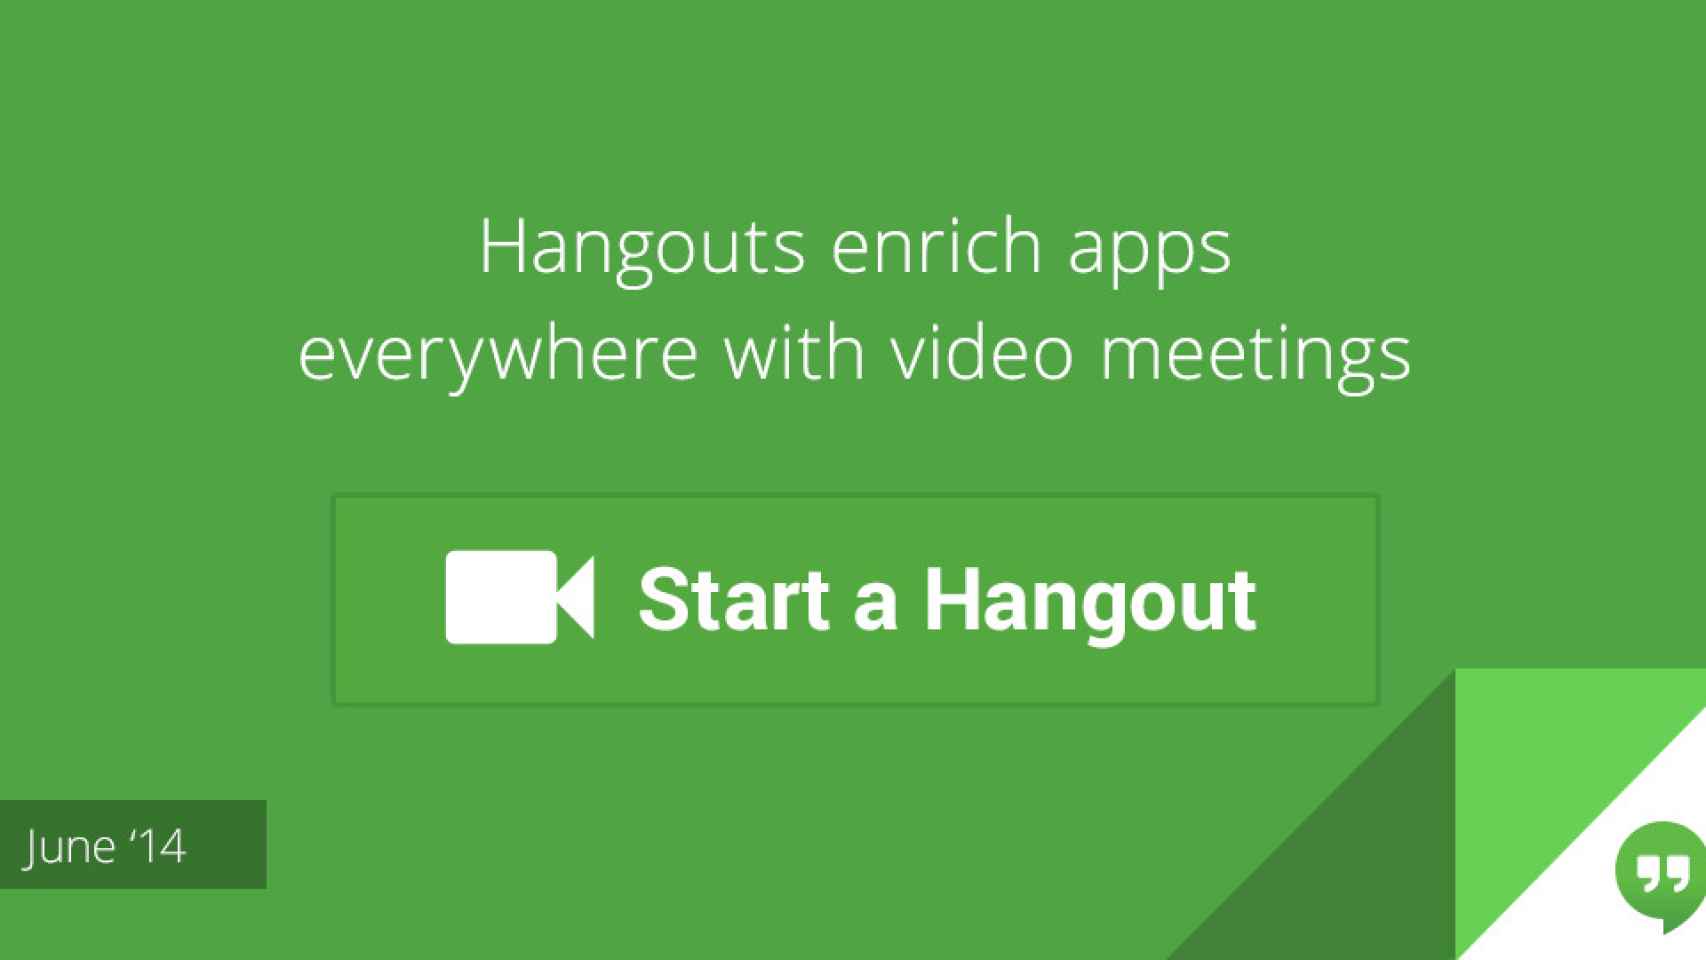 Google crea un botón Hangouts para que las empresas lo integren en sus webs y Apps